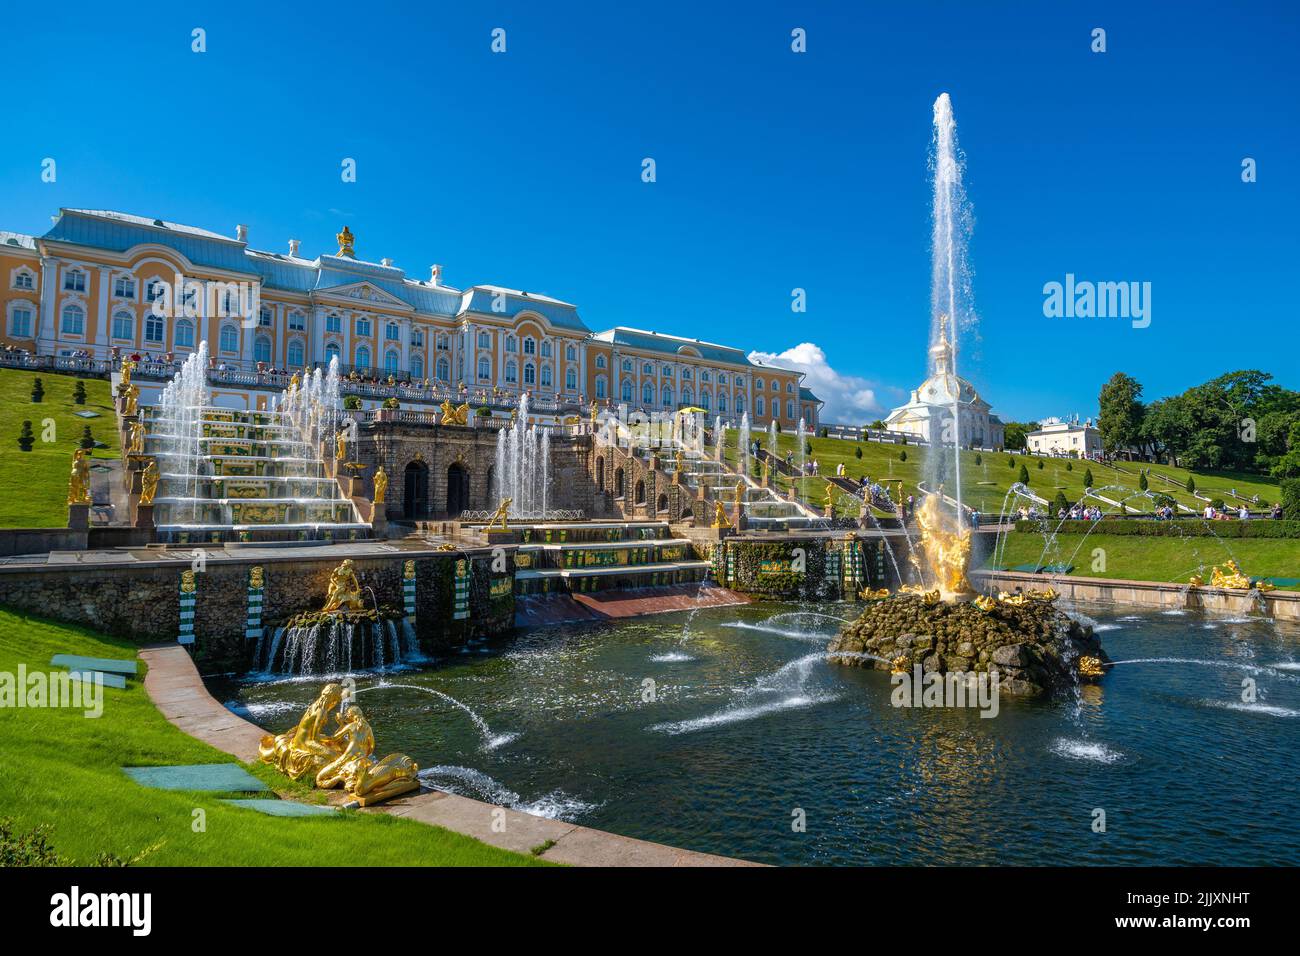 San Petersburgo, Rusia - 8 de agosto de 2020: Grandes fuentes en cascada en Petergof, una de las estructuras de fuentes más grandes del mundo. Foto de stock